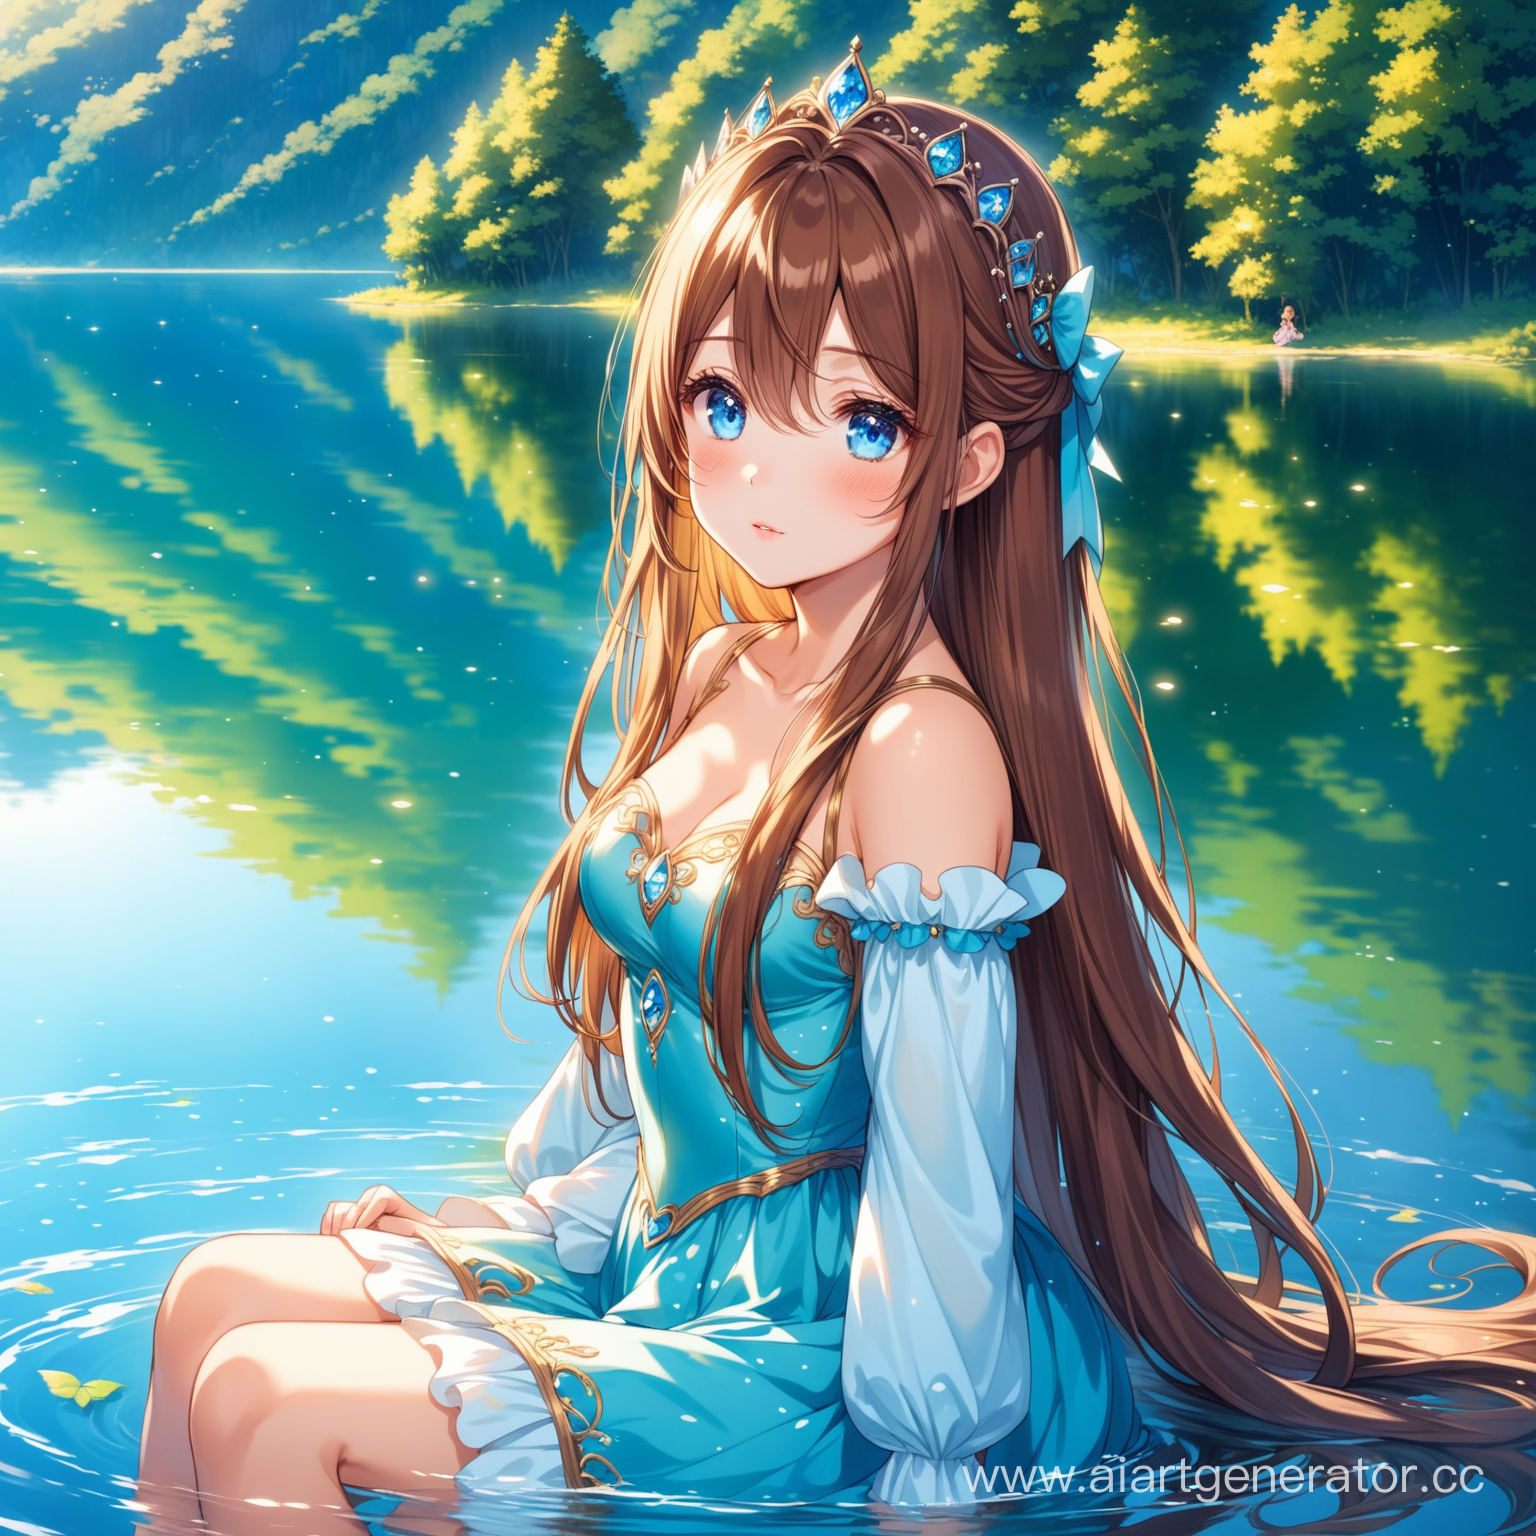 аниме девушка миловидной внешности, длинные каштановые волосы, голубые глаза, длинные ресницы, идеальная анатомия, сидит у озера на корточках, сказочная одежда, смотрит в отражение воды